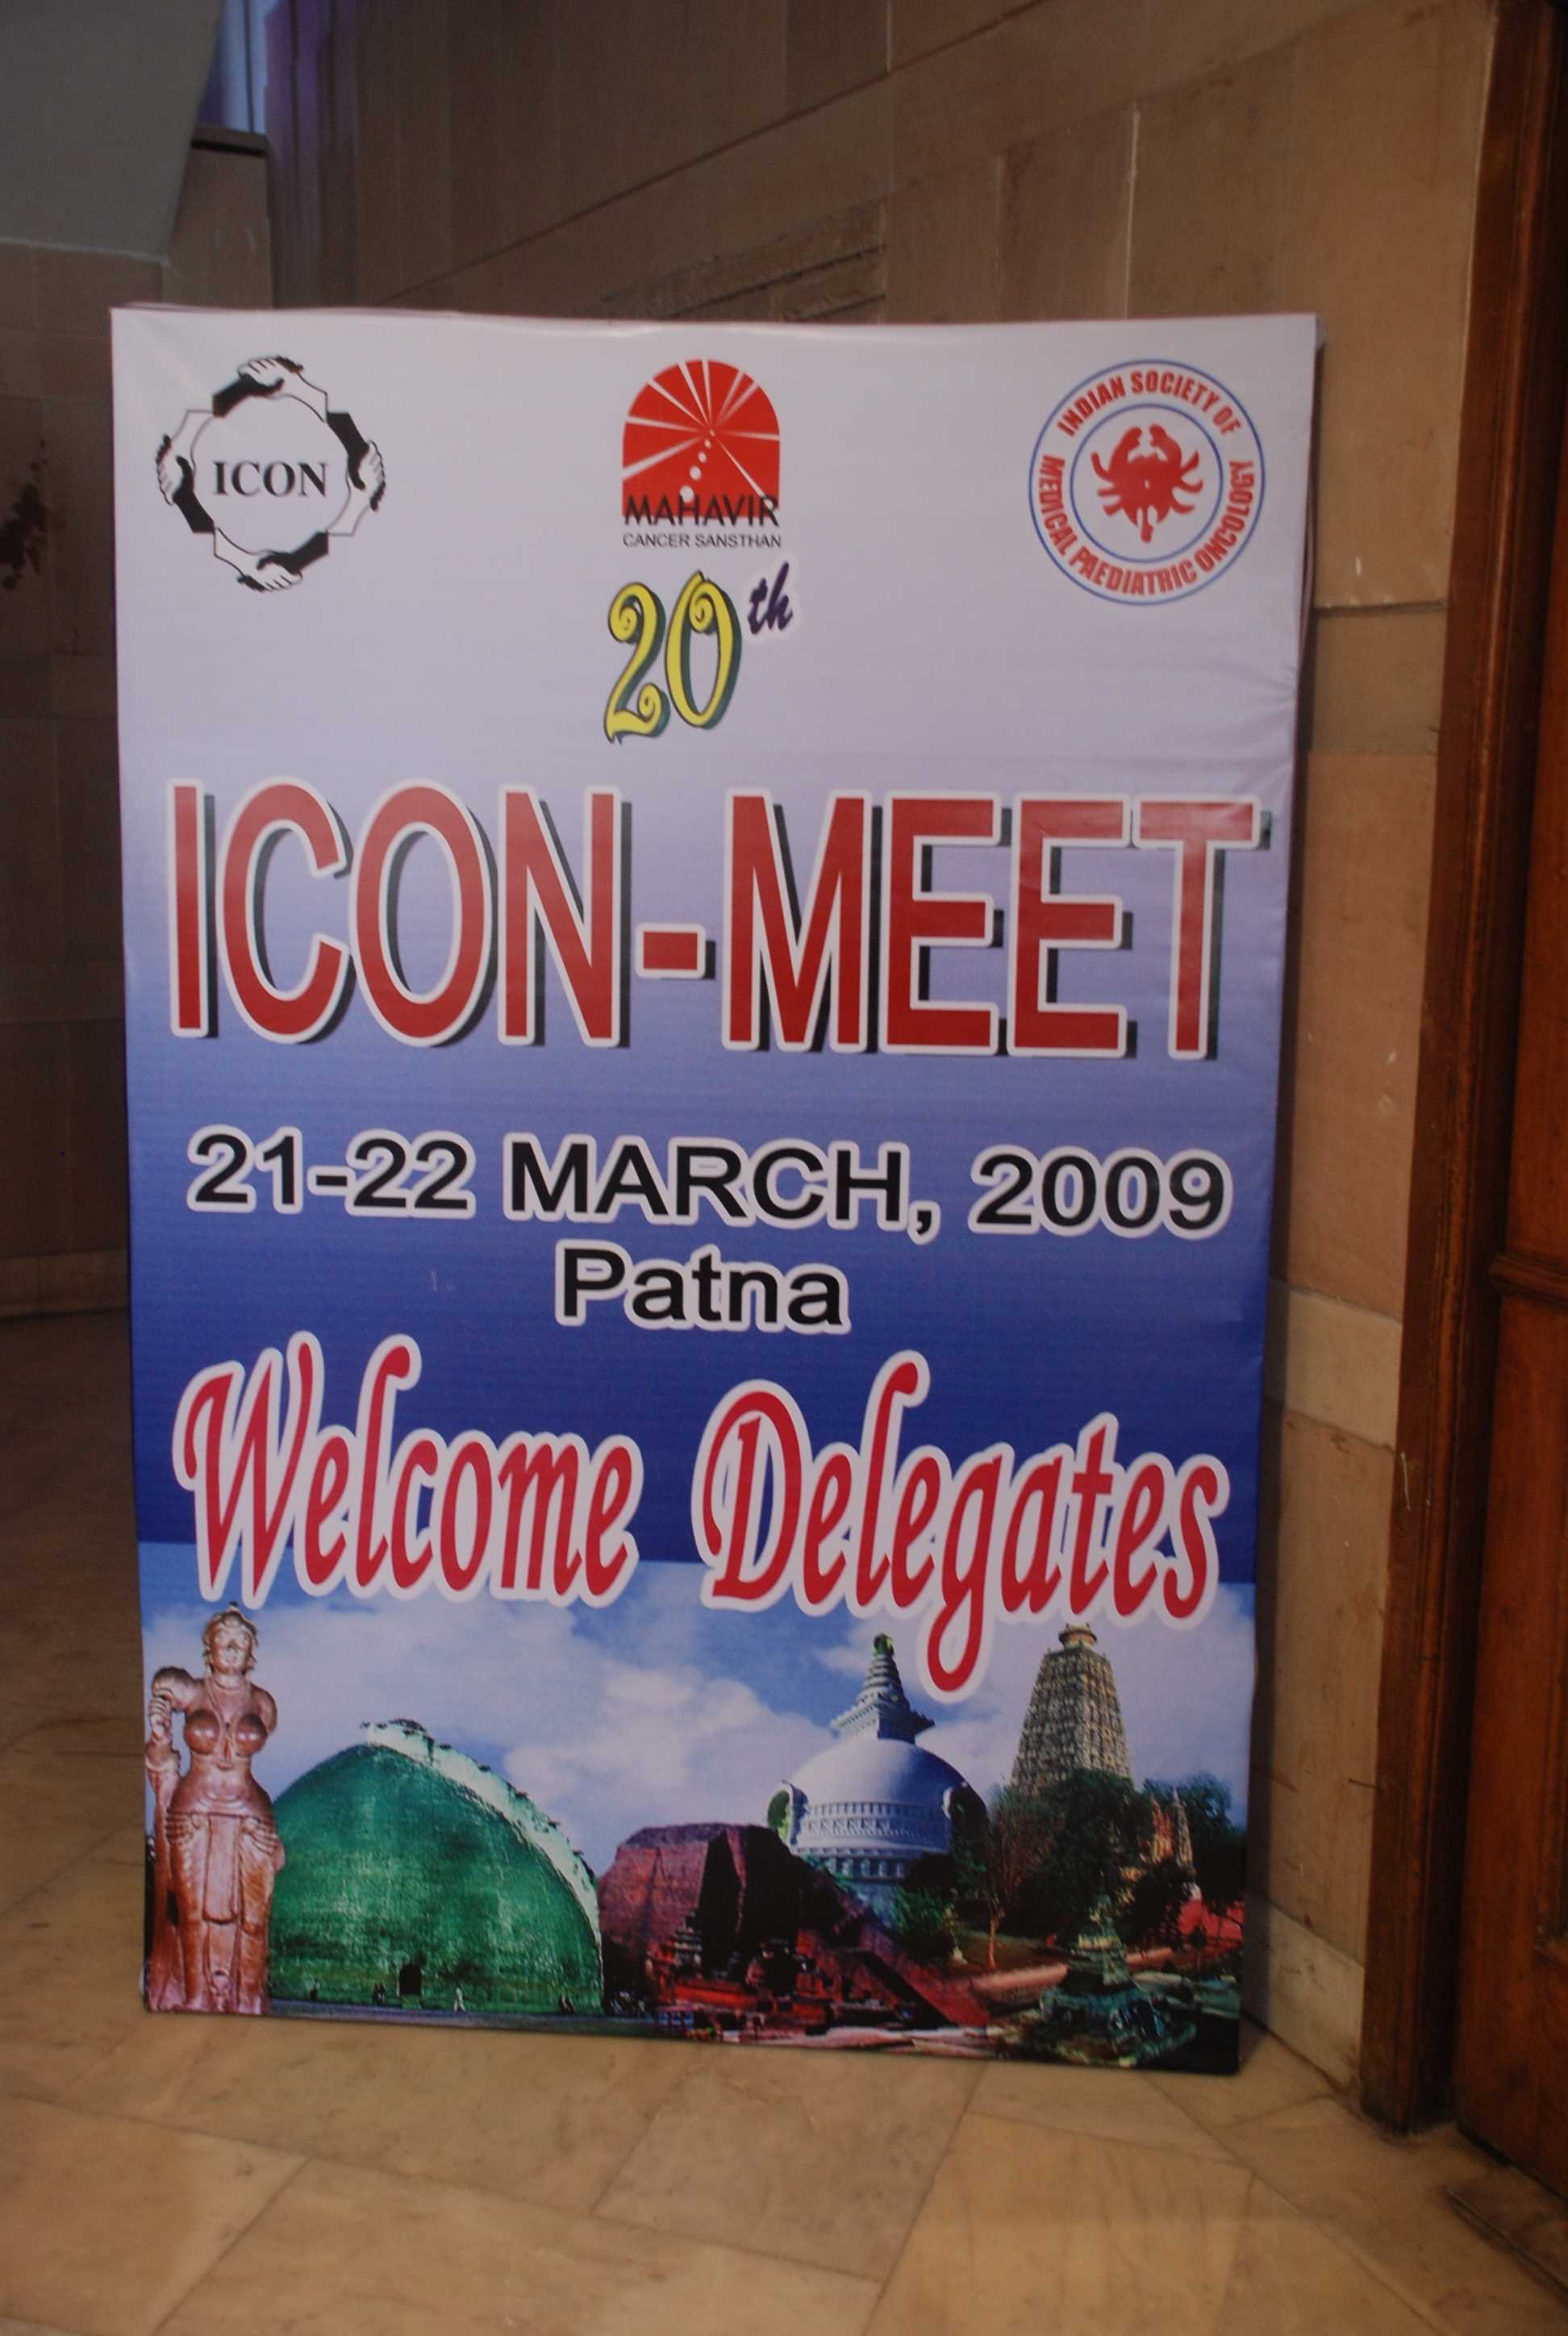 20th ICON Meet